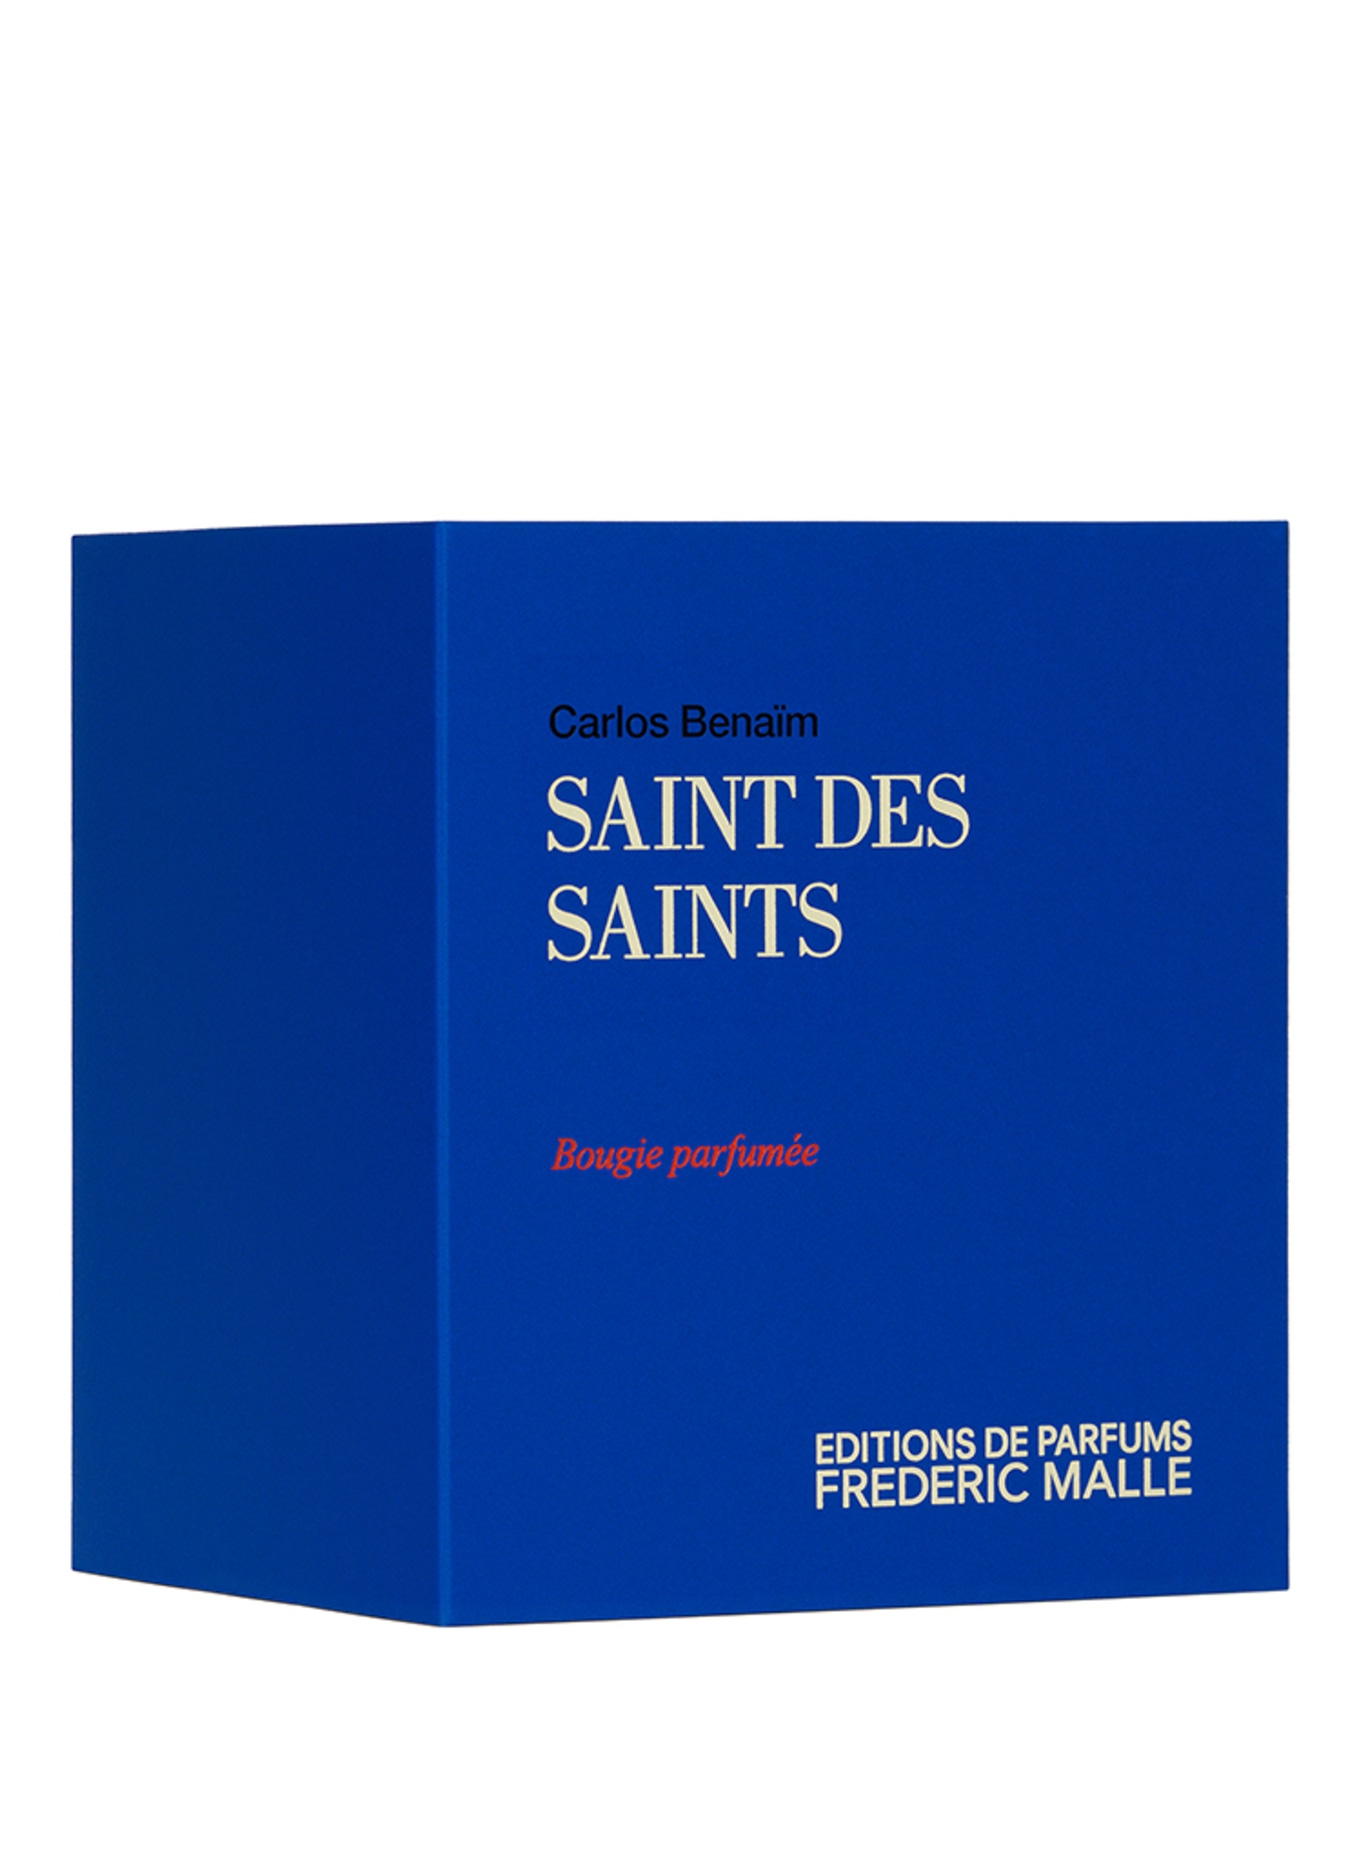 EDITIONS DE PARFUMS FREDERIC MALLE SAINT DES SAINTS (Obrázek 2)